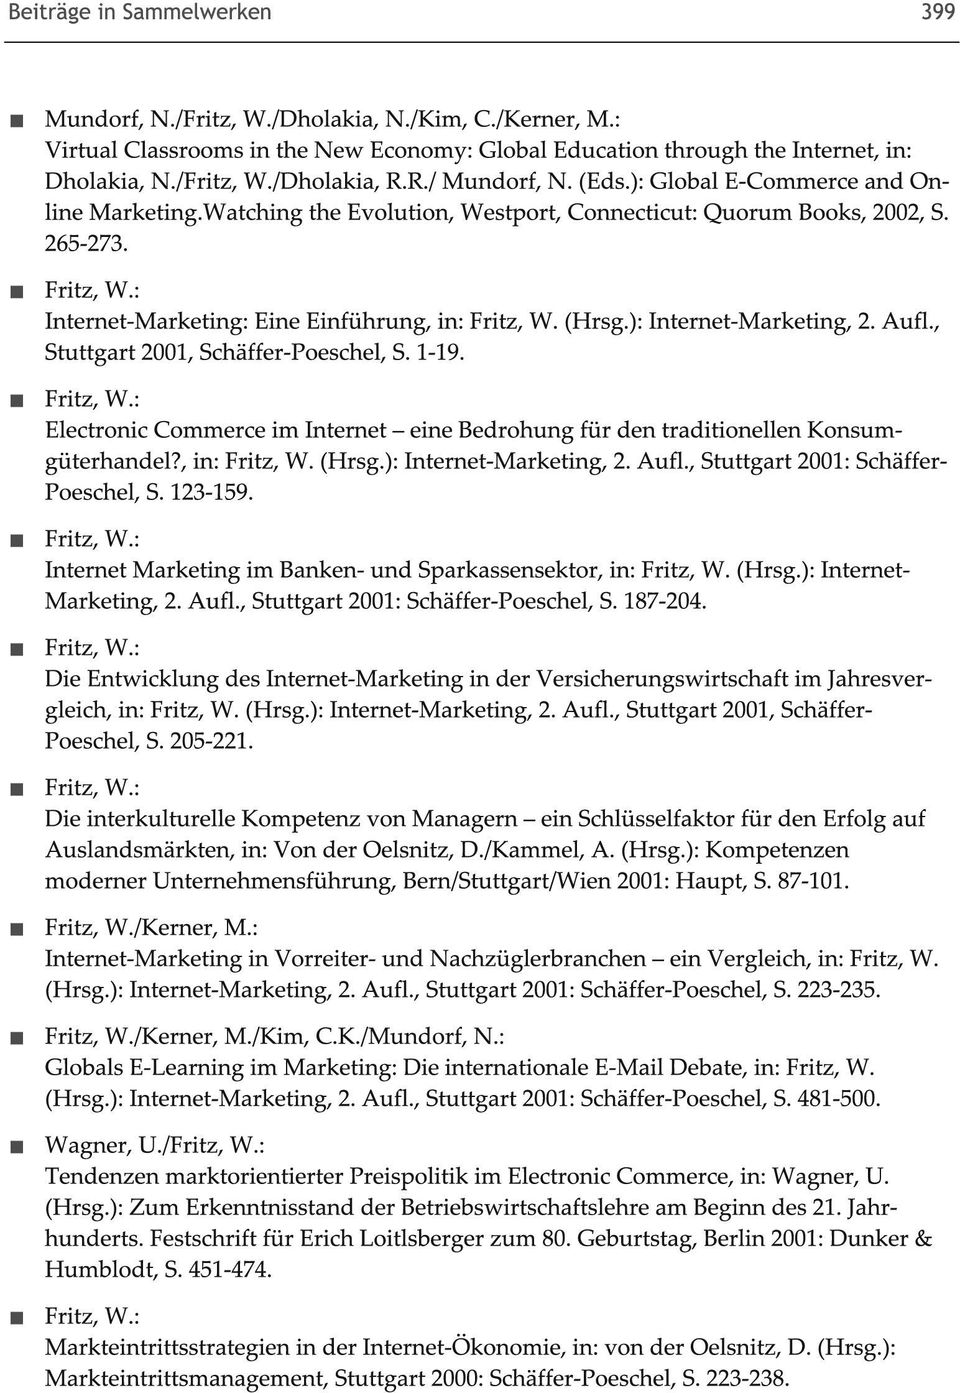 ): Internet-Marketing, 2. Aufl., Stuttgart 2001, Schäffer-PoescheL S. 1-19. Electronic Commerce im Internet - eine Bedrohung für den traditionellen Konsumgüterhandel?, in: Fritz, W. (Hrsg.